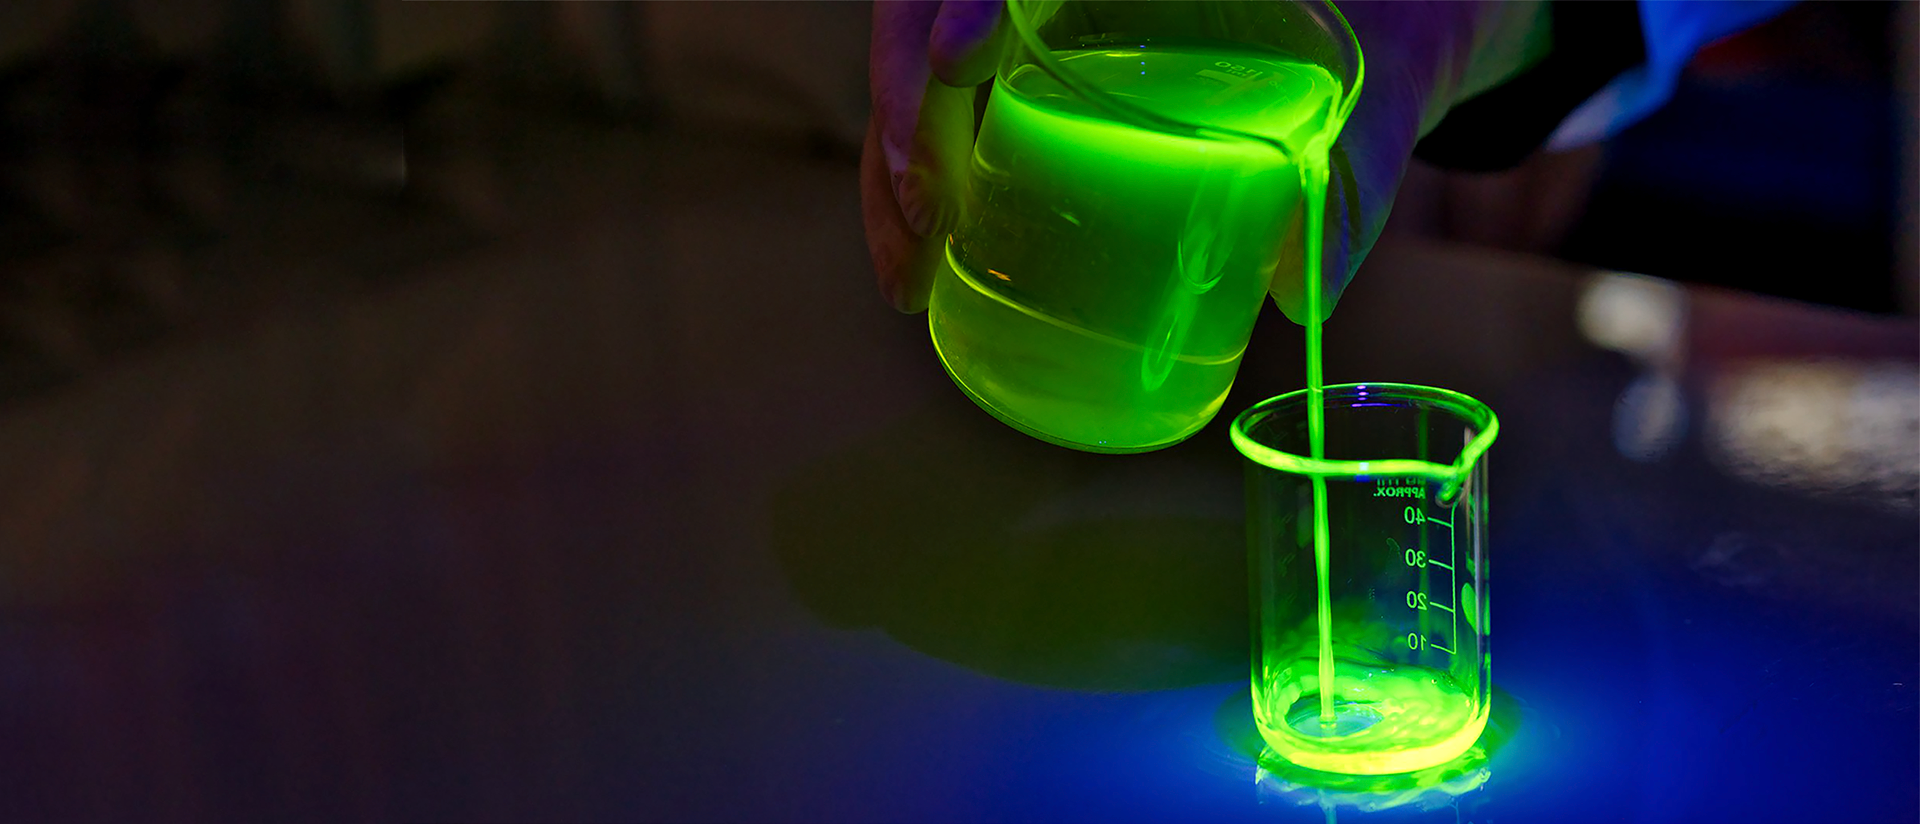 Lampe UV pour fluorescéine